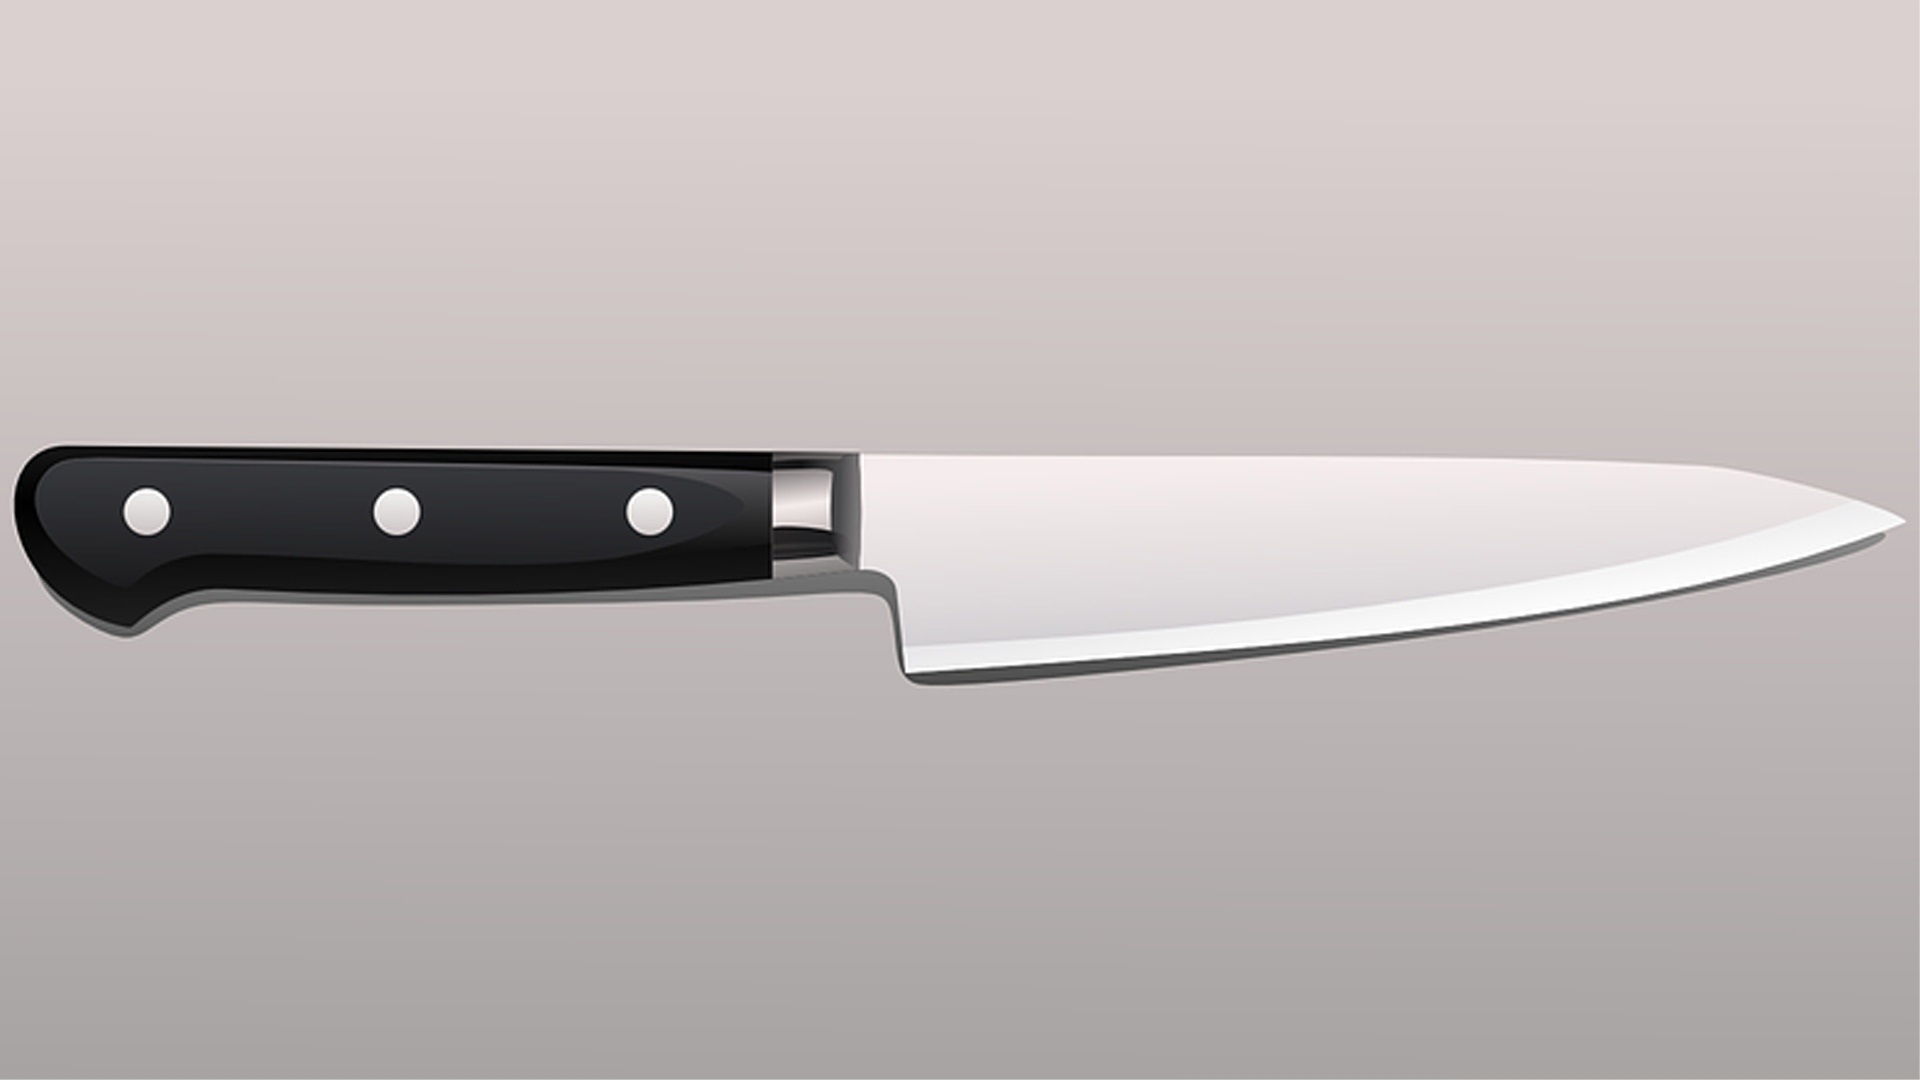 фото ножа на белом фоне